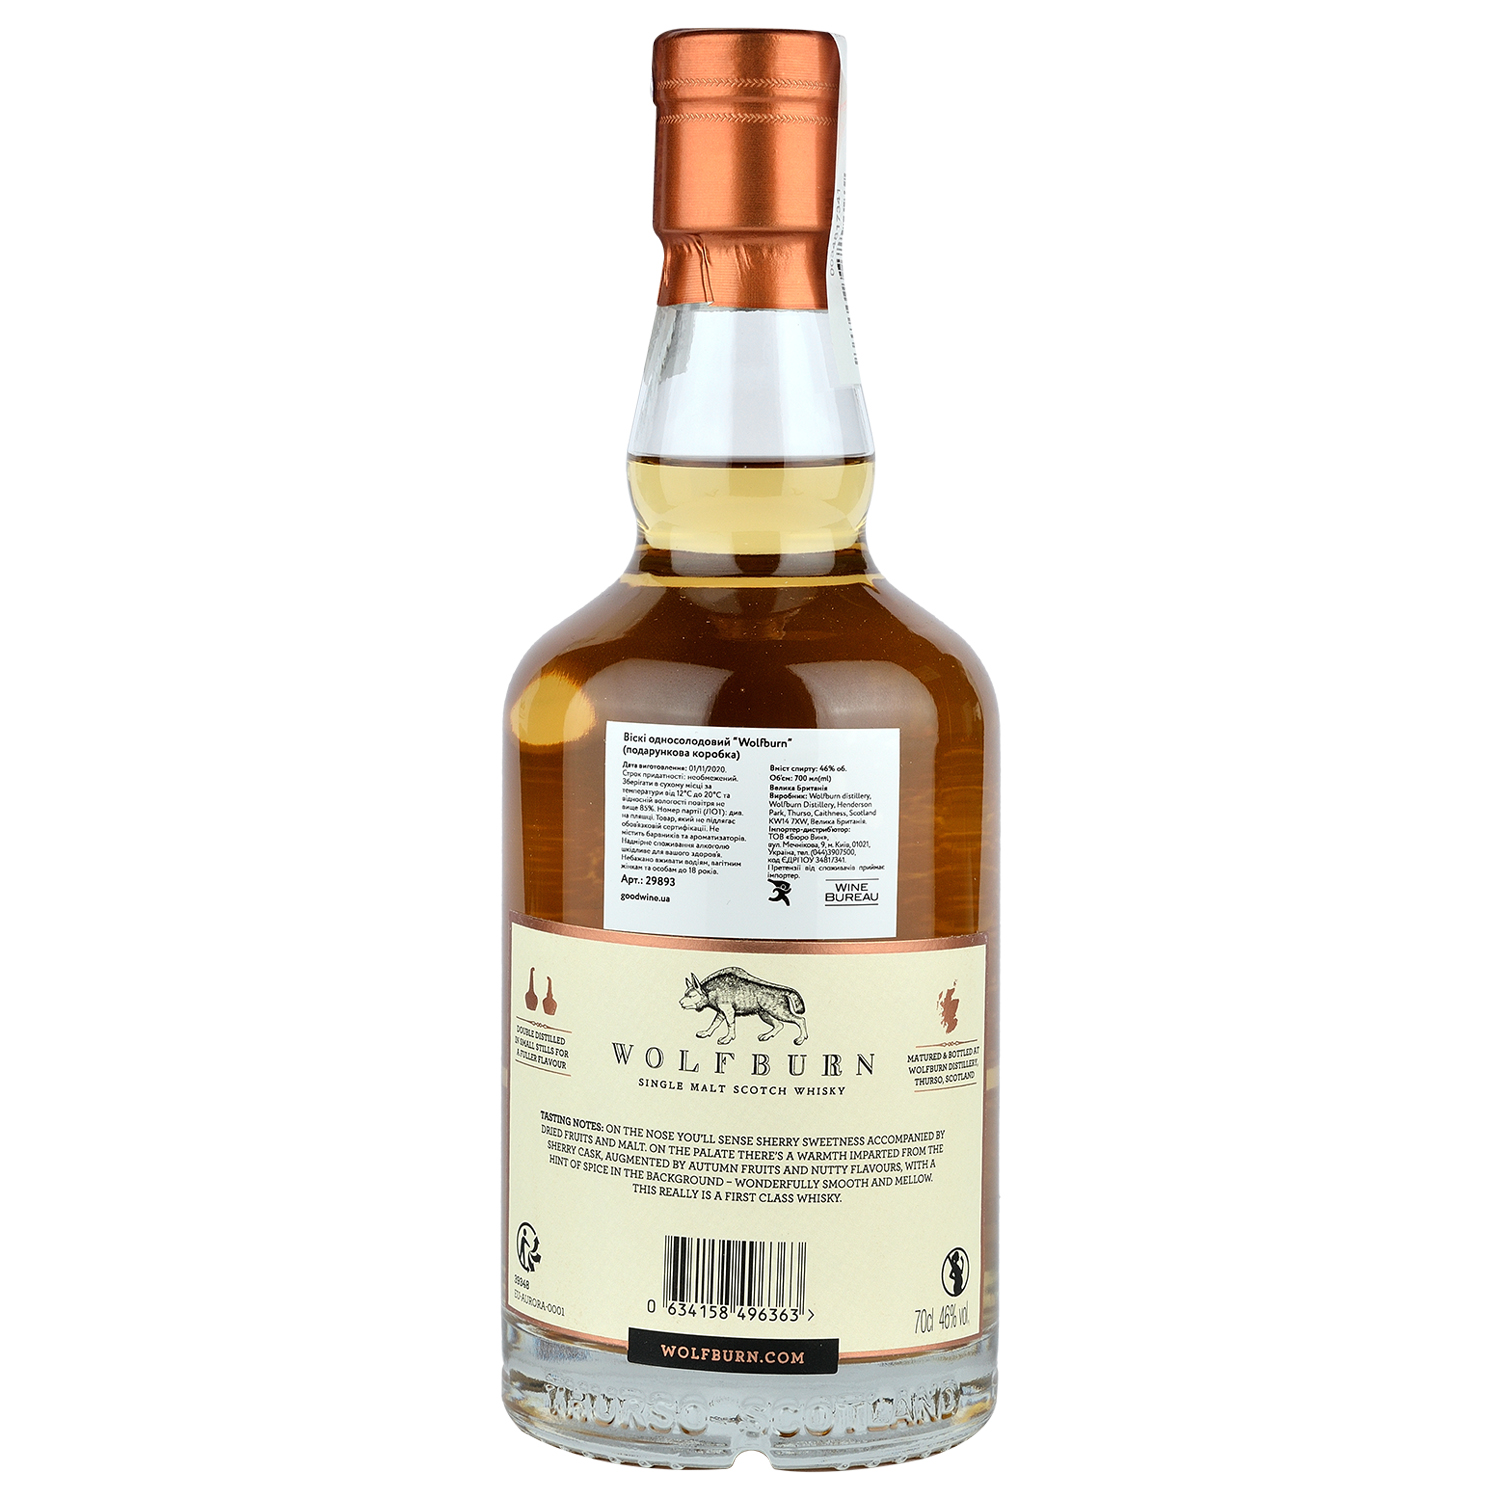 Віскі Wolfburn Aurora Single Malt Scotch Whisky, у подарунковій упаковці, 46%, 0,7 л - фото 2